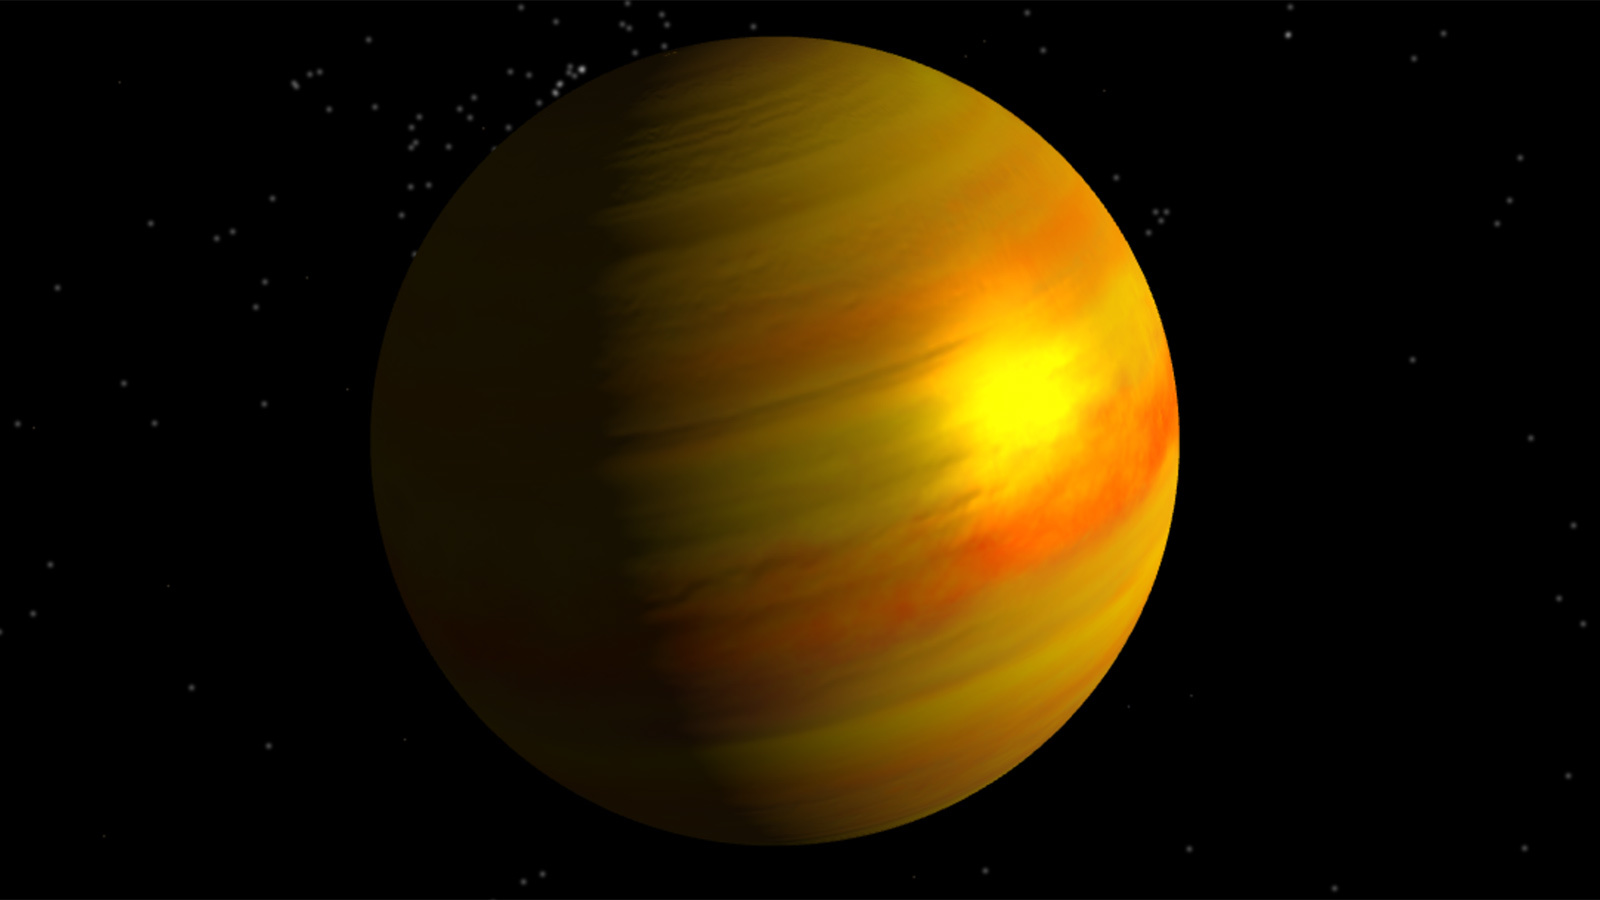 Kepler-11 b